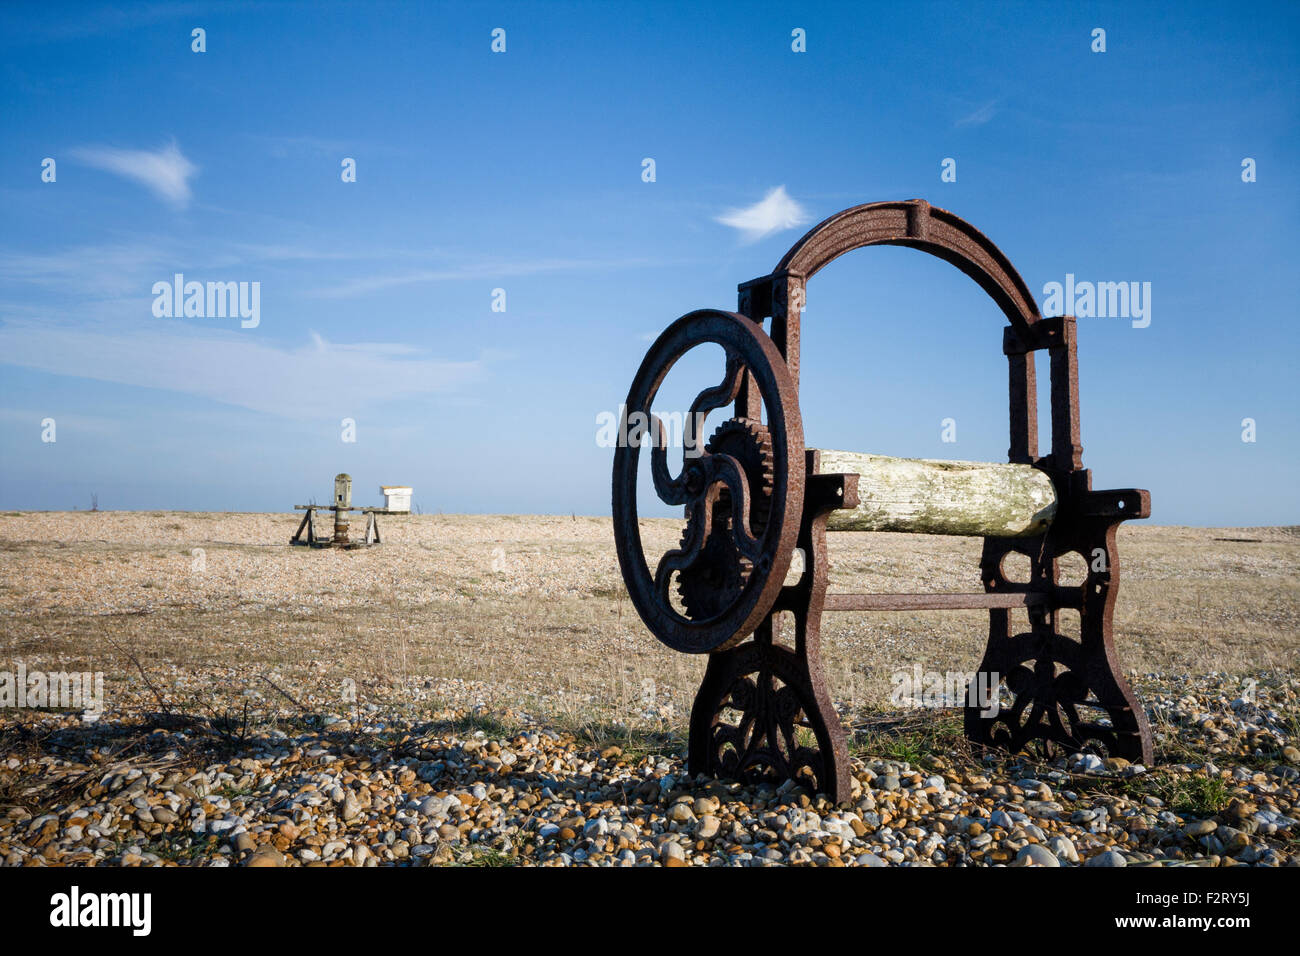 Malacate antigua maquinaria abandonada en la playa de guijarros de Dungeness, Kent, Inglaterra, Reino Unido. Foto de stock